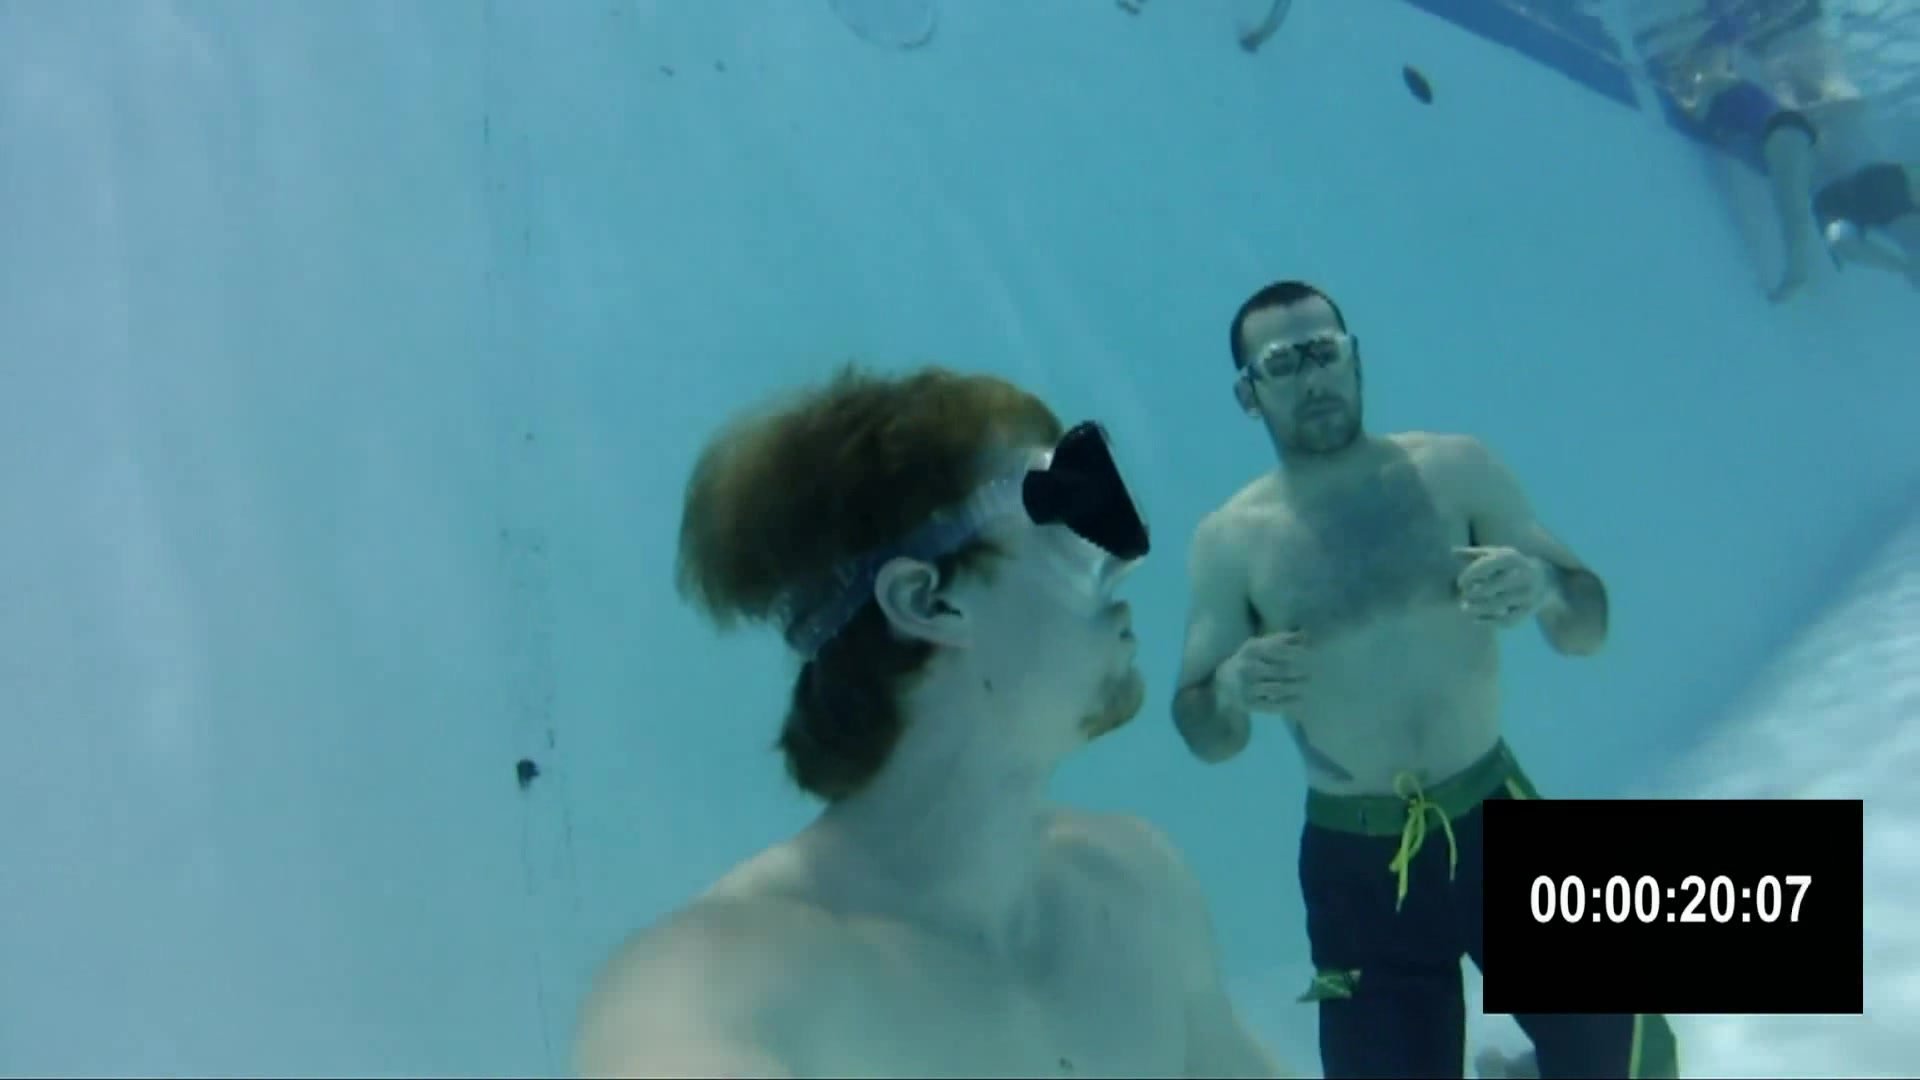 Underwater masked breathold contest